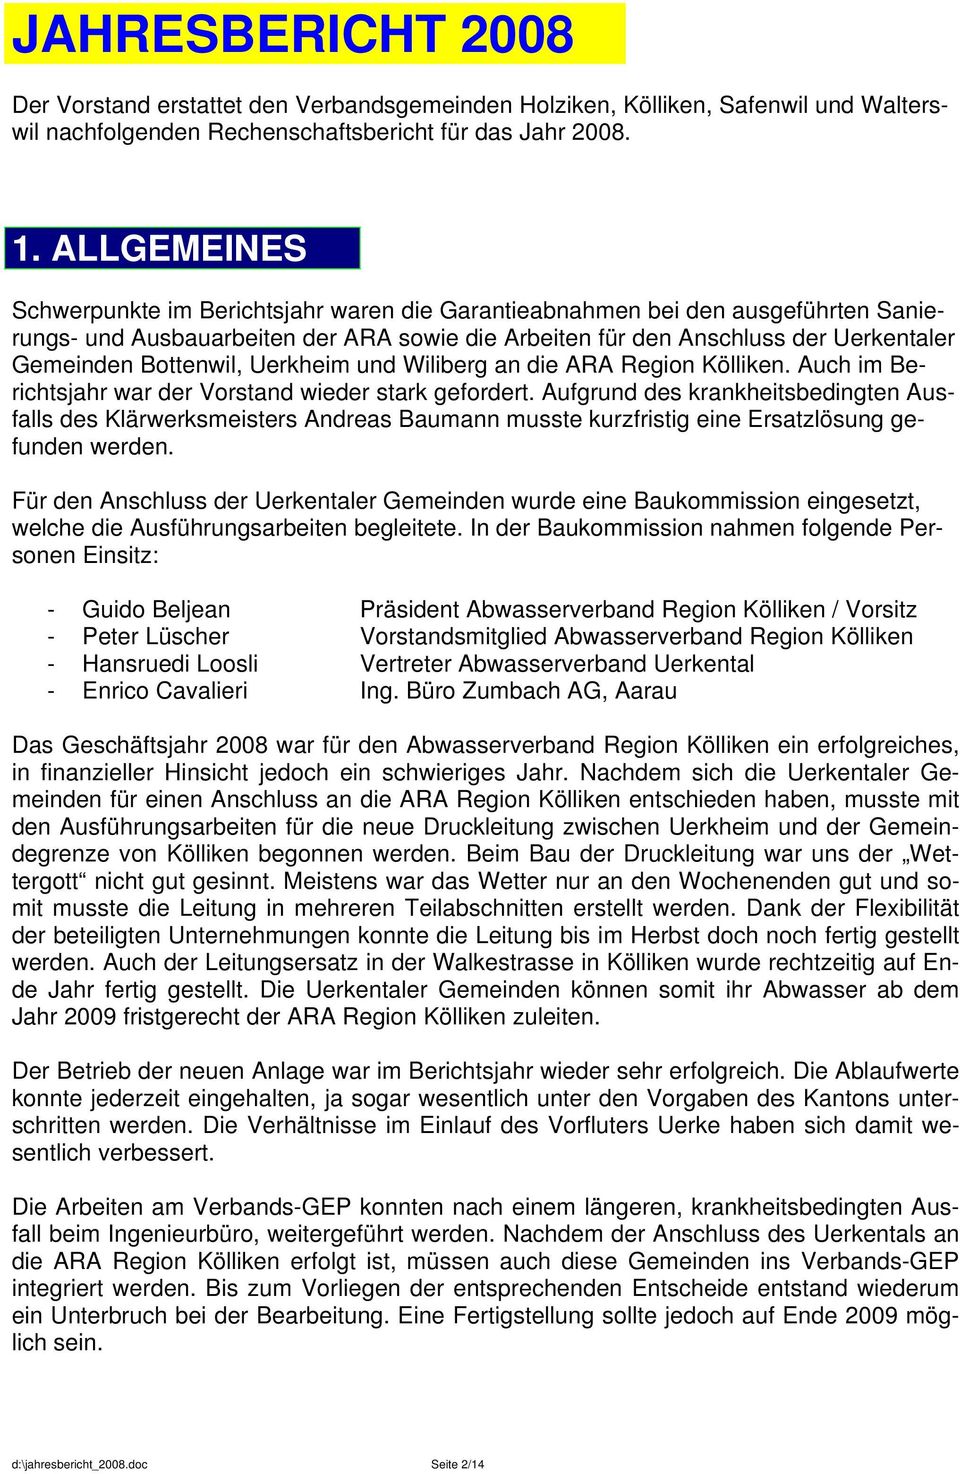 Bottenwil, Uerkheim und Wiliberg an die ARA Region Kölliken. Auch im Berichtsjahr war der Vorstand wieder stark gefordert.